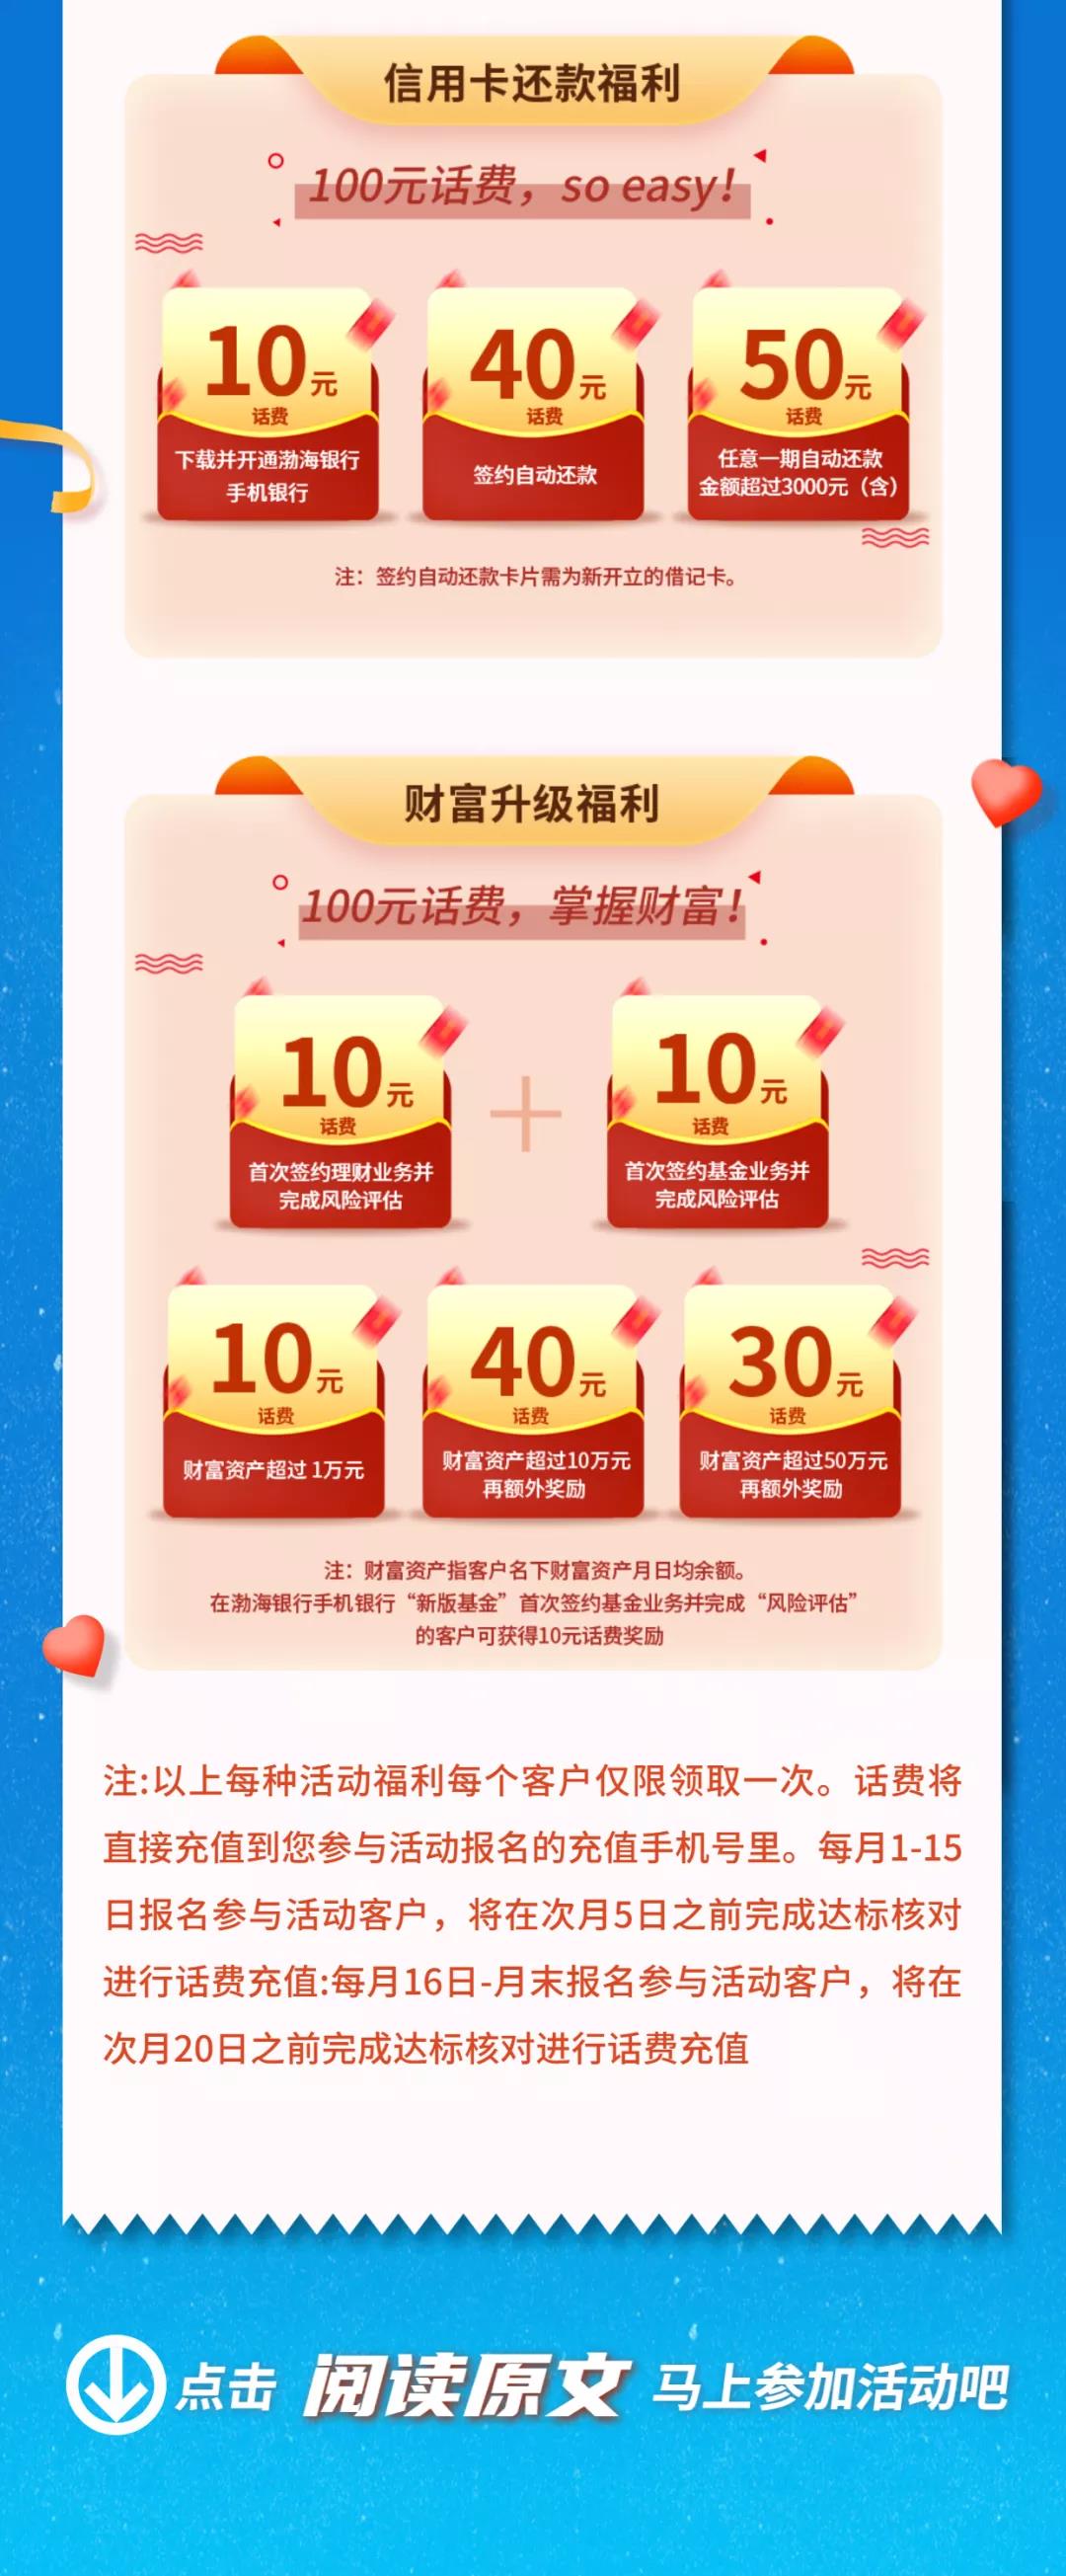 渤海储蓄卡新户100~200话费-别去买爱奇艺月卡-惠小助(52huixz.com)